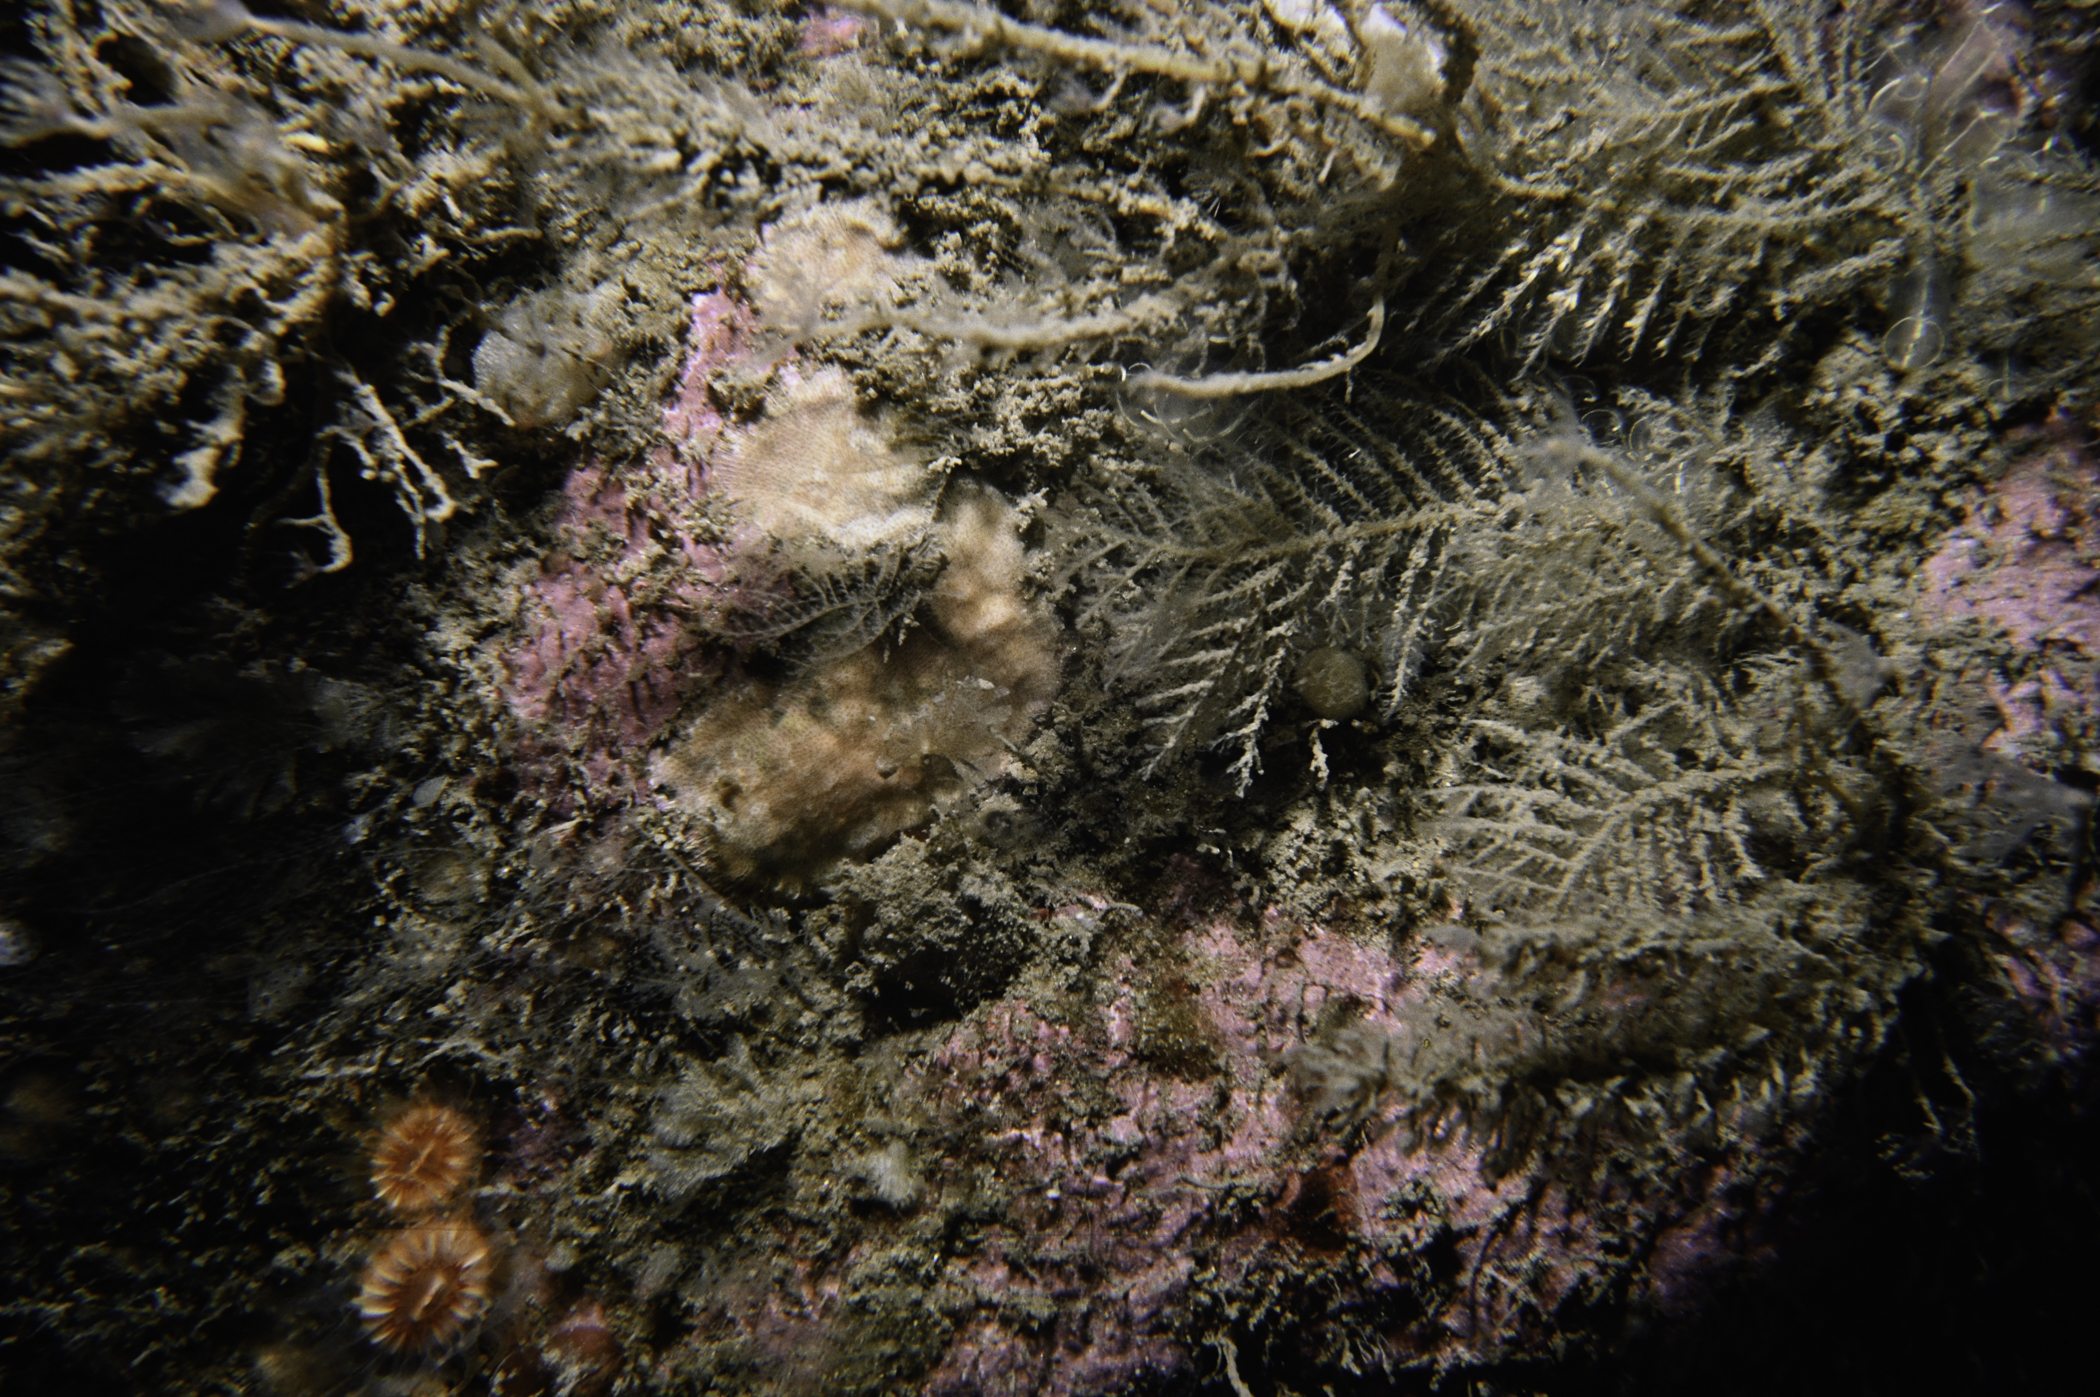 Halecium halecinum, Schizomavella linearis. Site: White Cliffs, Church Bay, Rathlin Island. 